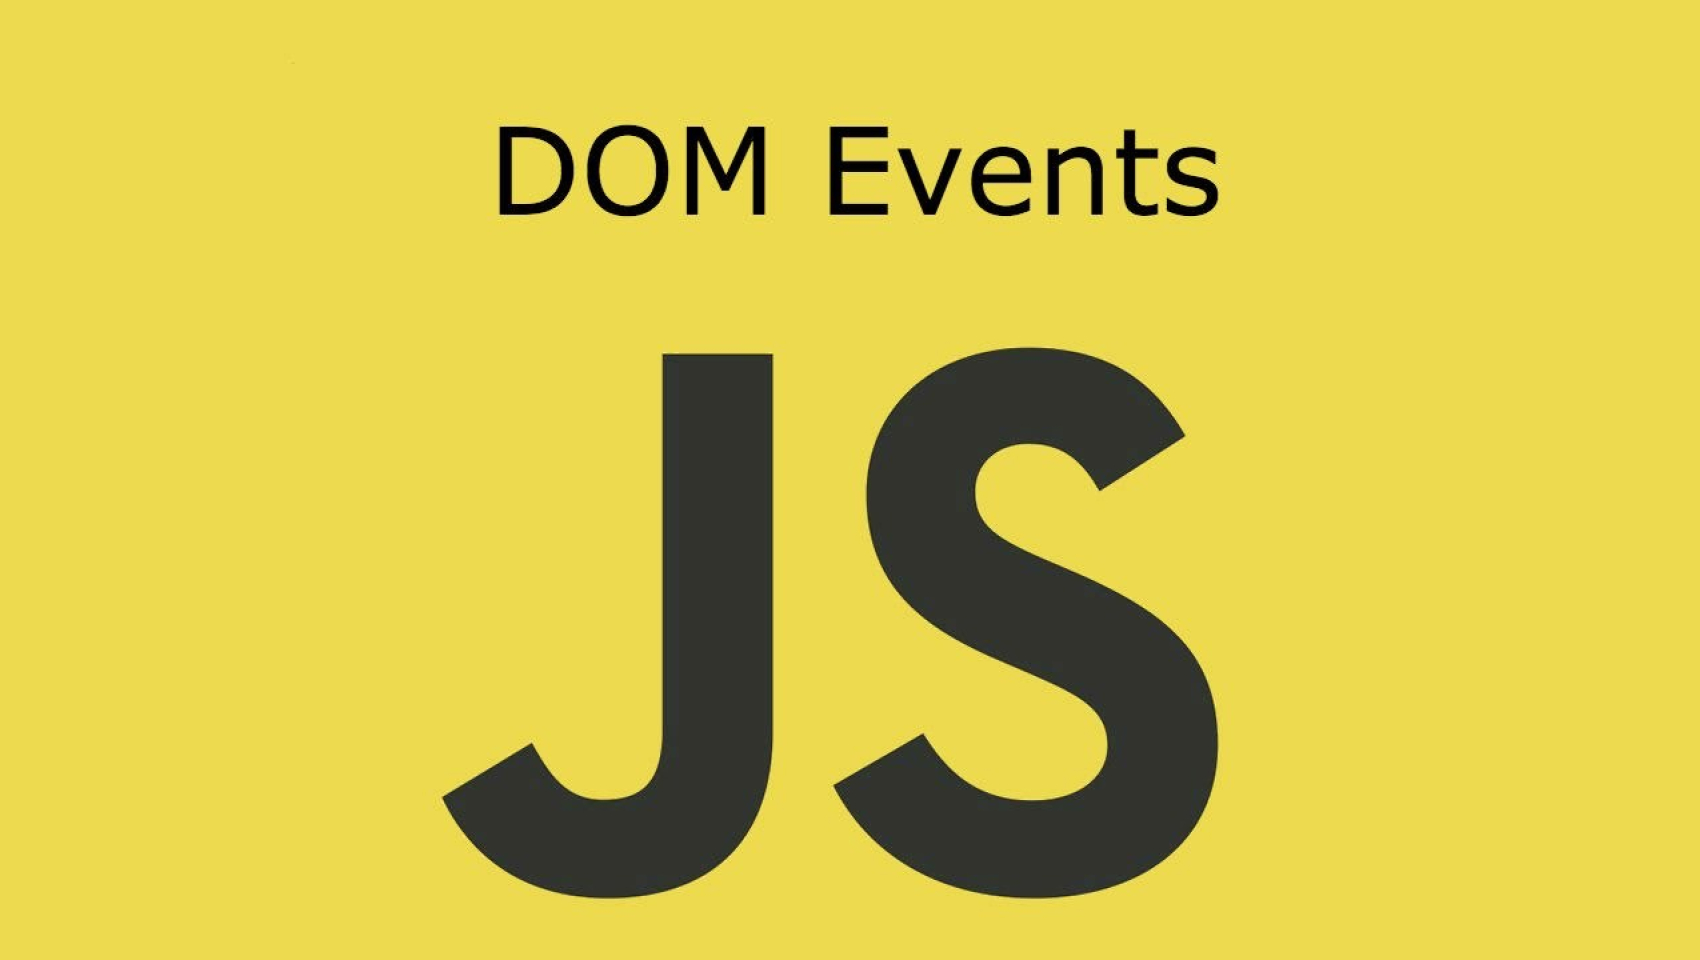 Про роботу з DOM в Javascript